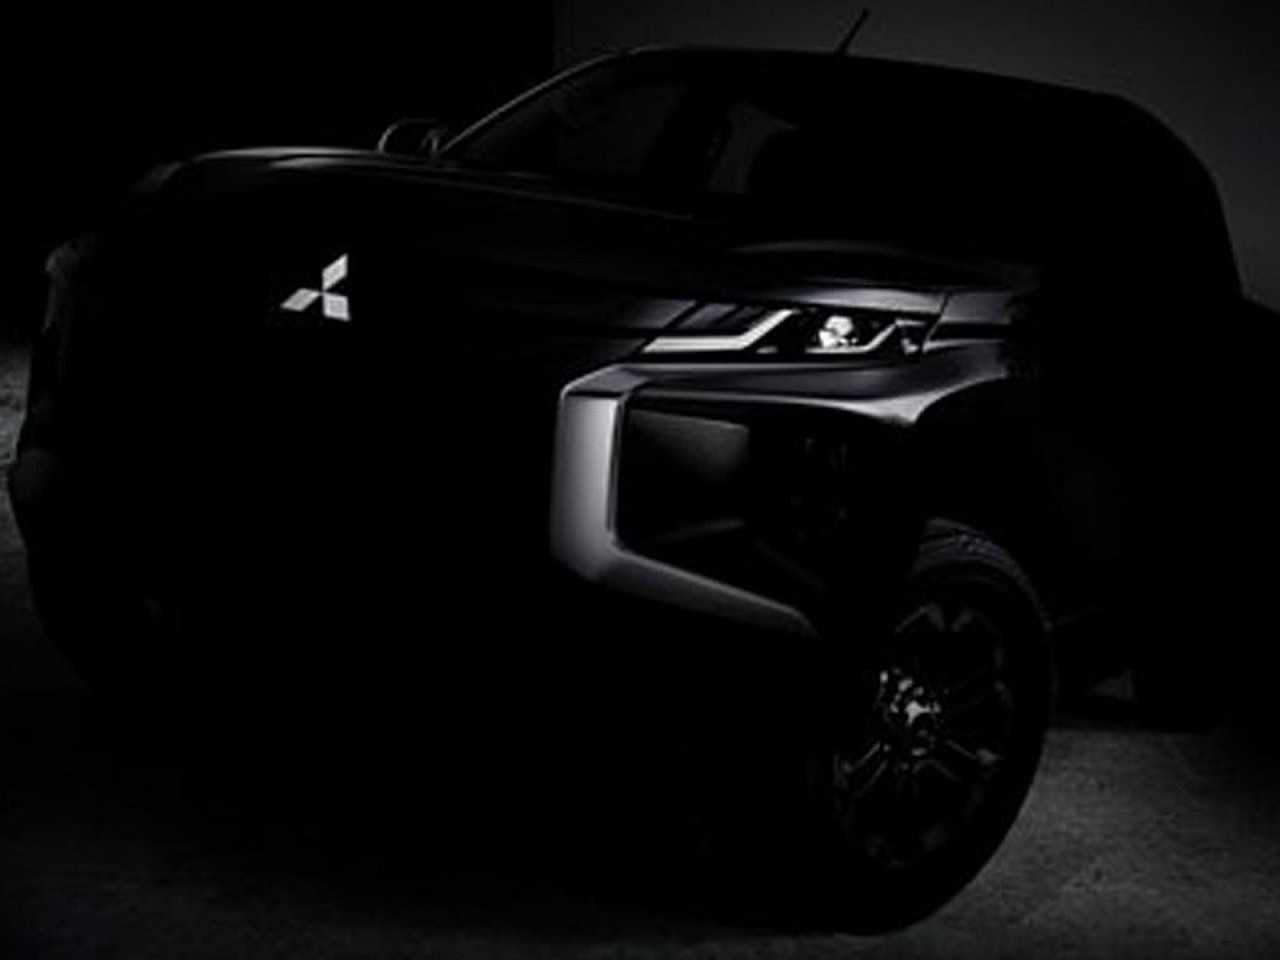 Teaser revelado pela Mitsubishi mostrando os primeiros detalhes do facelift da L200 Triton